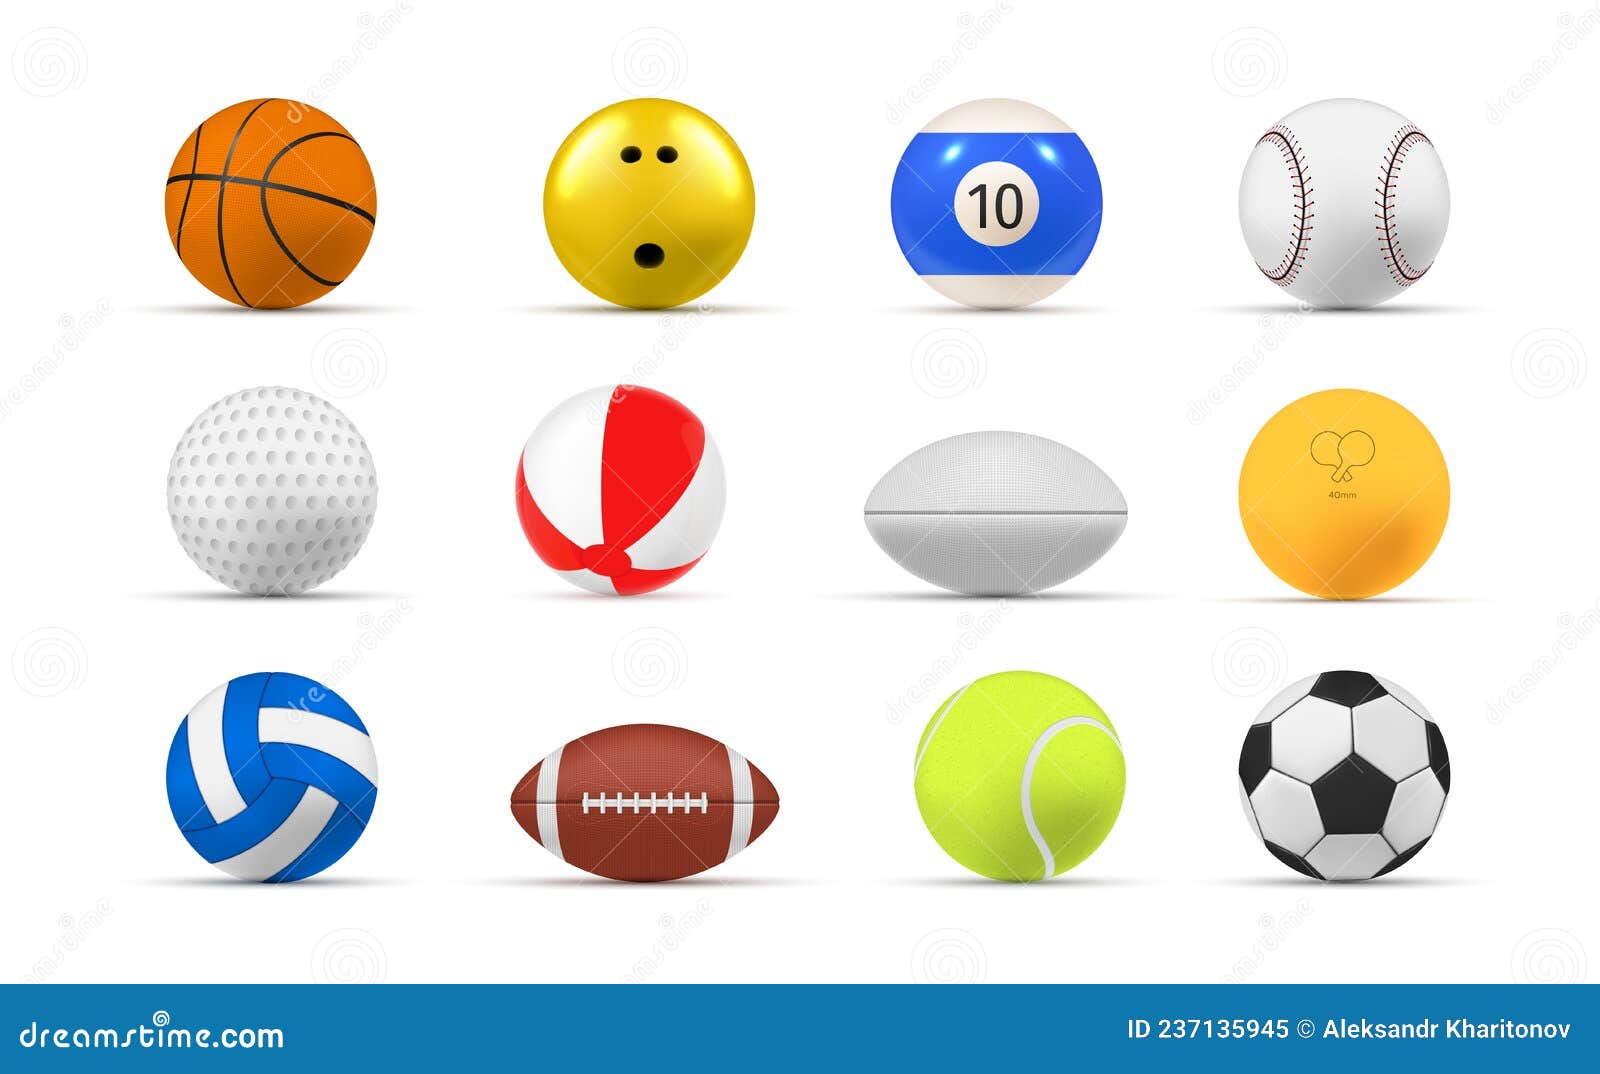 Bolas de jogo. equipamentos esportivos planos para futebol